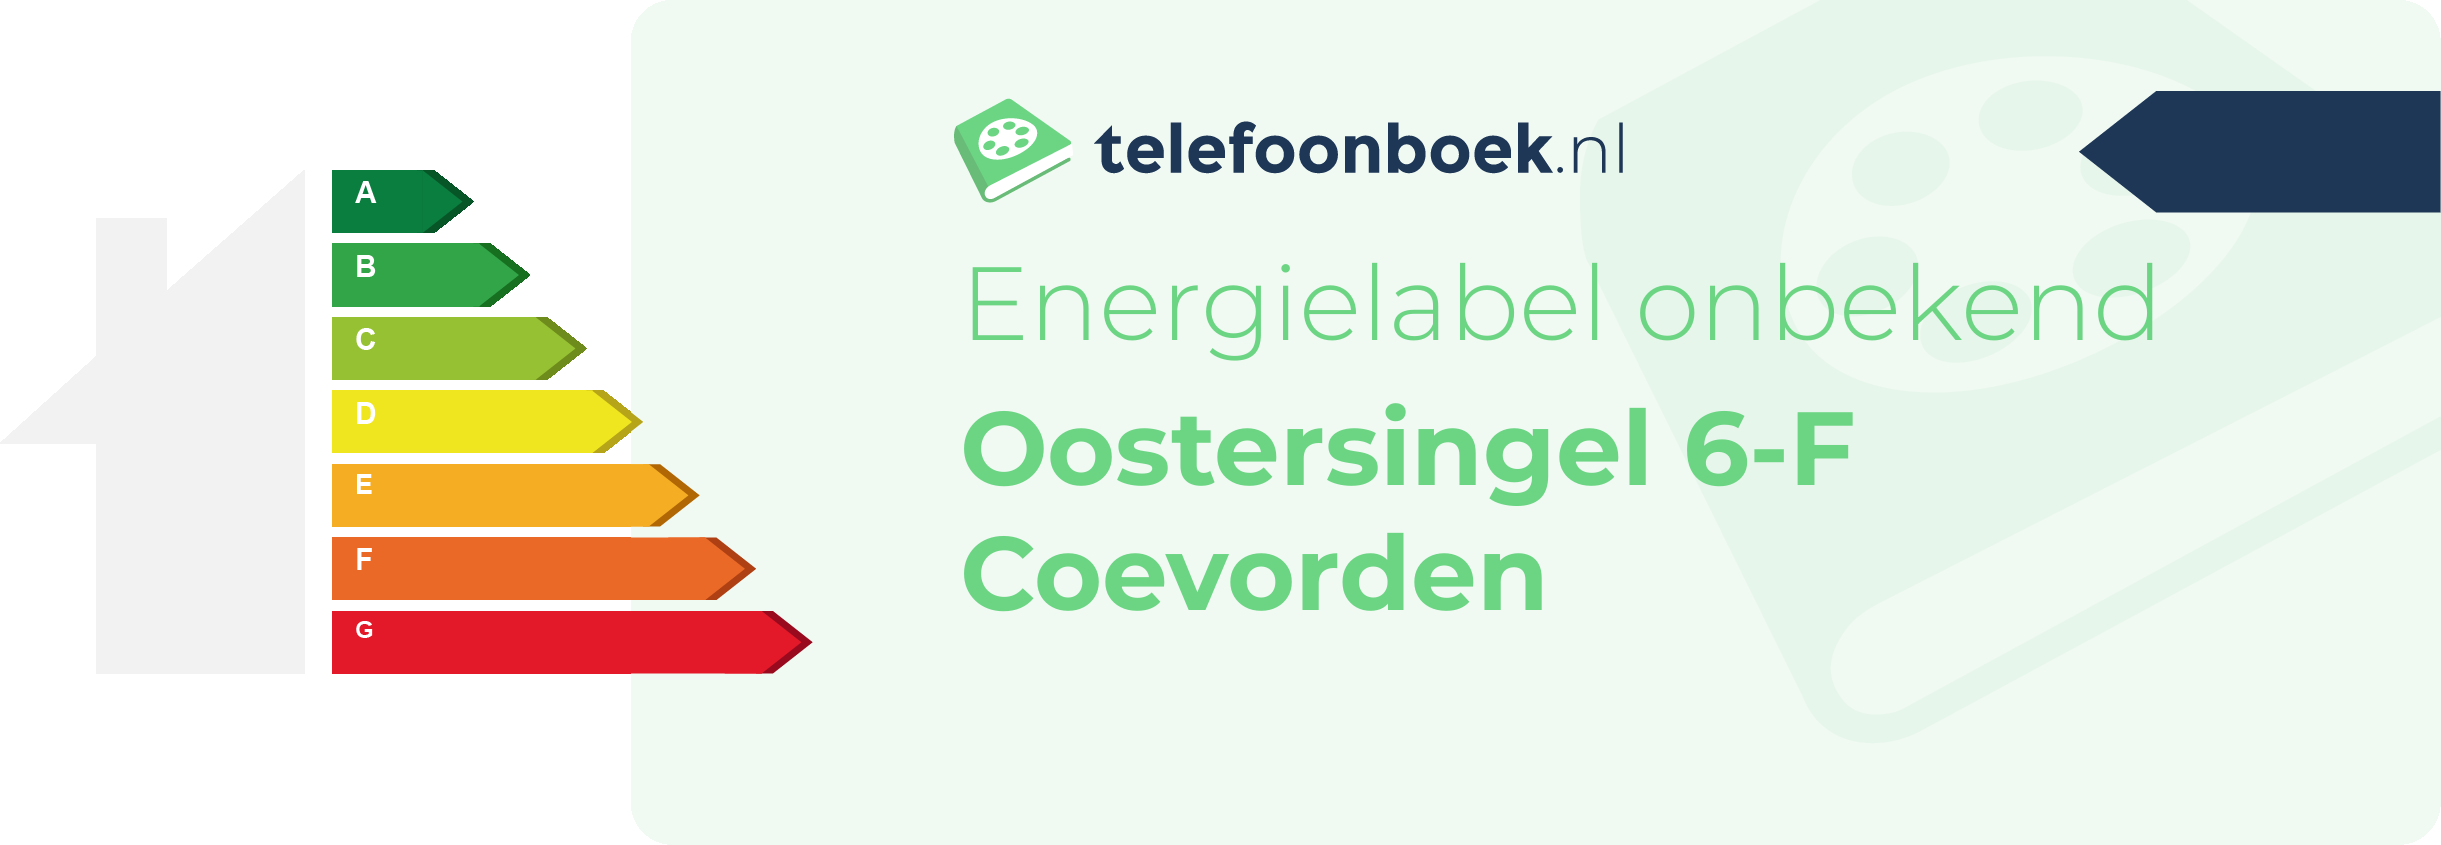 Energielabel Oostersingel 6-F Coevorden